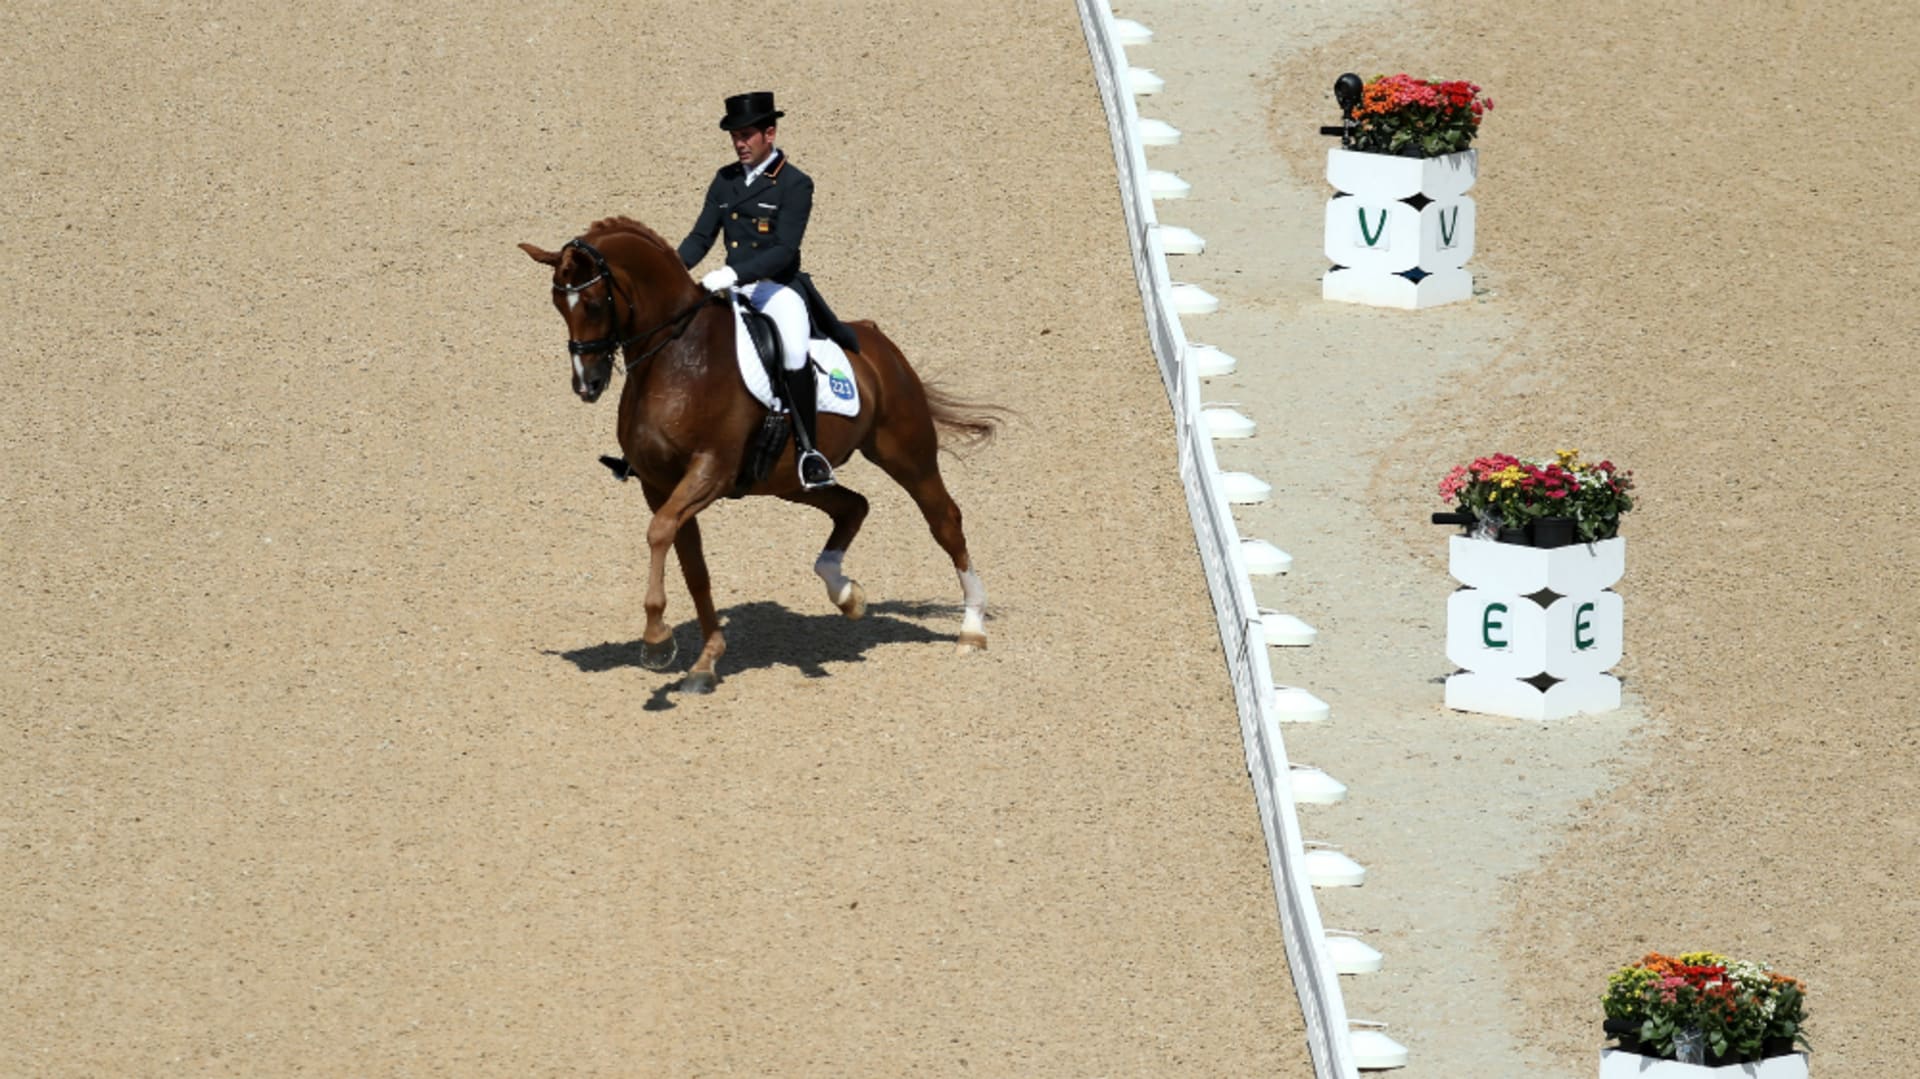 オリンピック馬術競技の銀貨 跳躍する馬さんと競技選手 人馬一体となって戦う姿